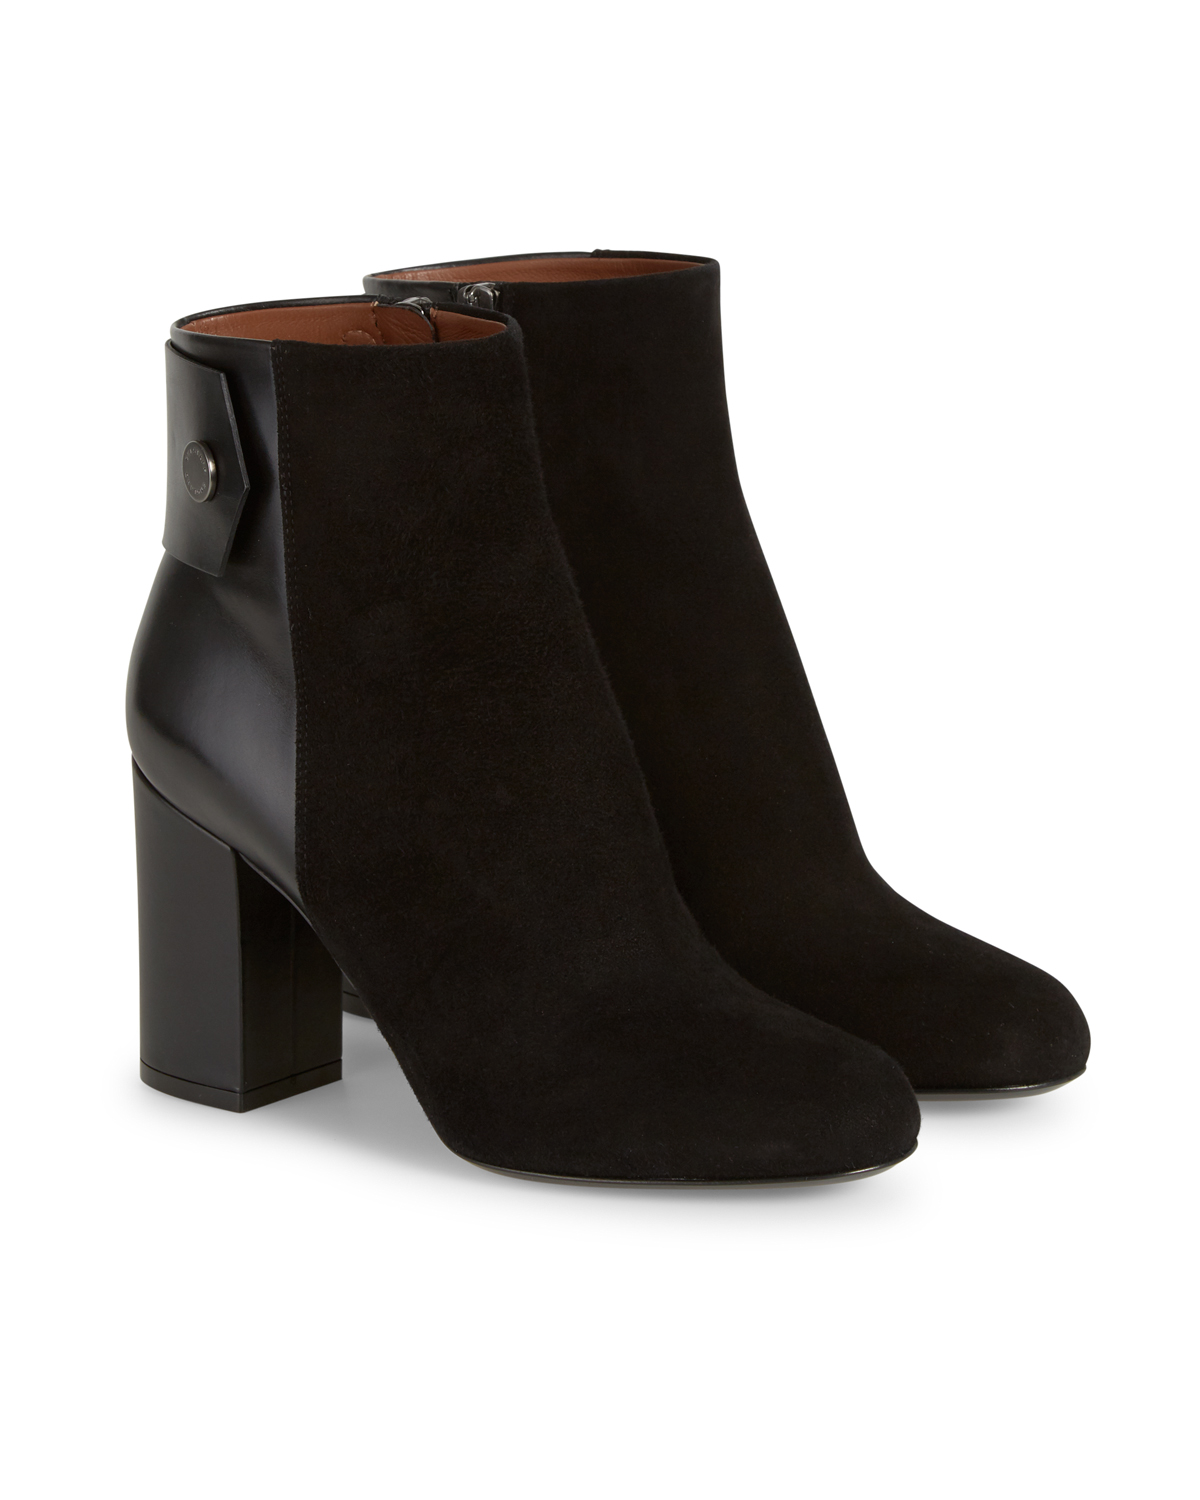 Belstaff Women's Astel Suede Ankle Boots Black | Linea Fashion